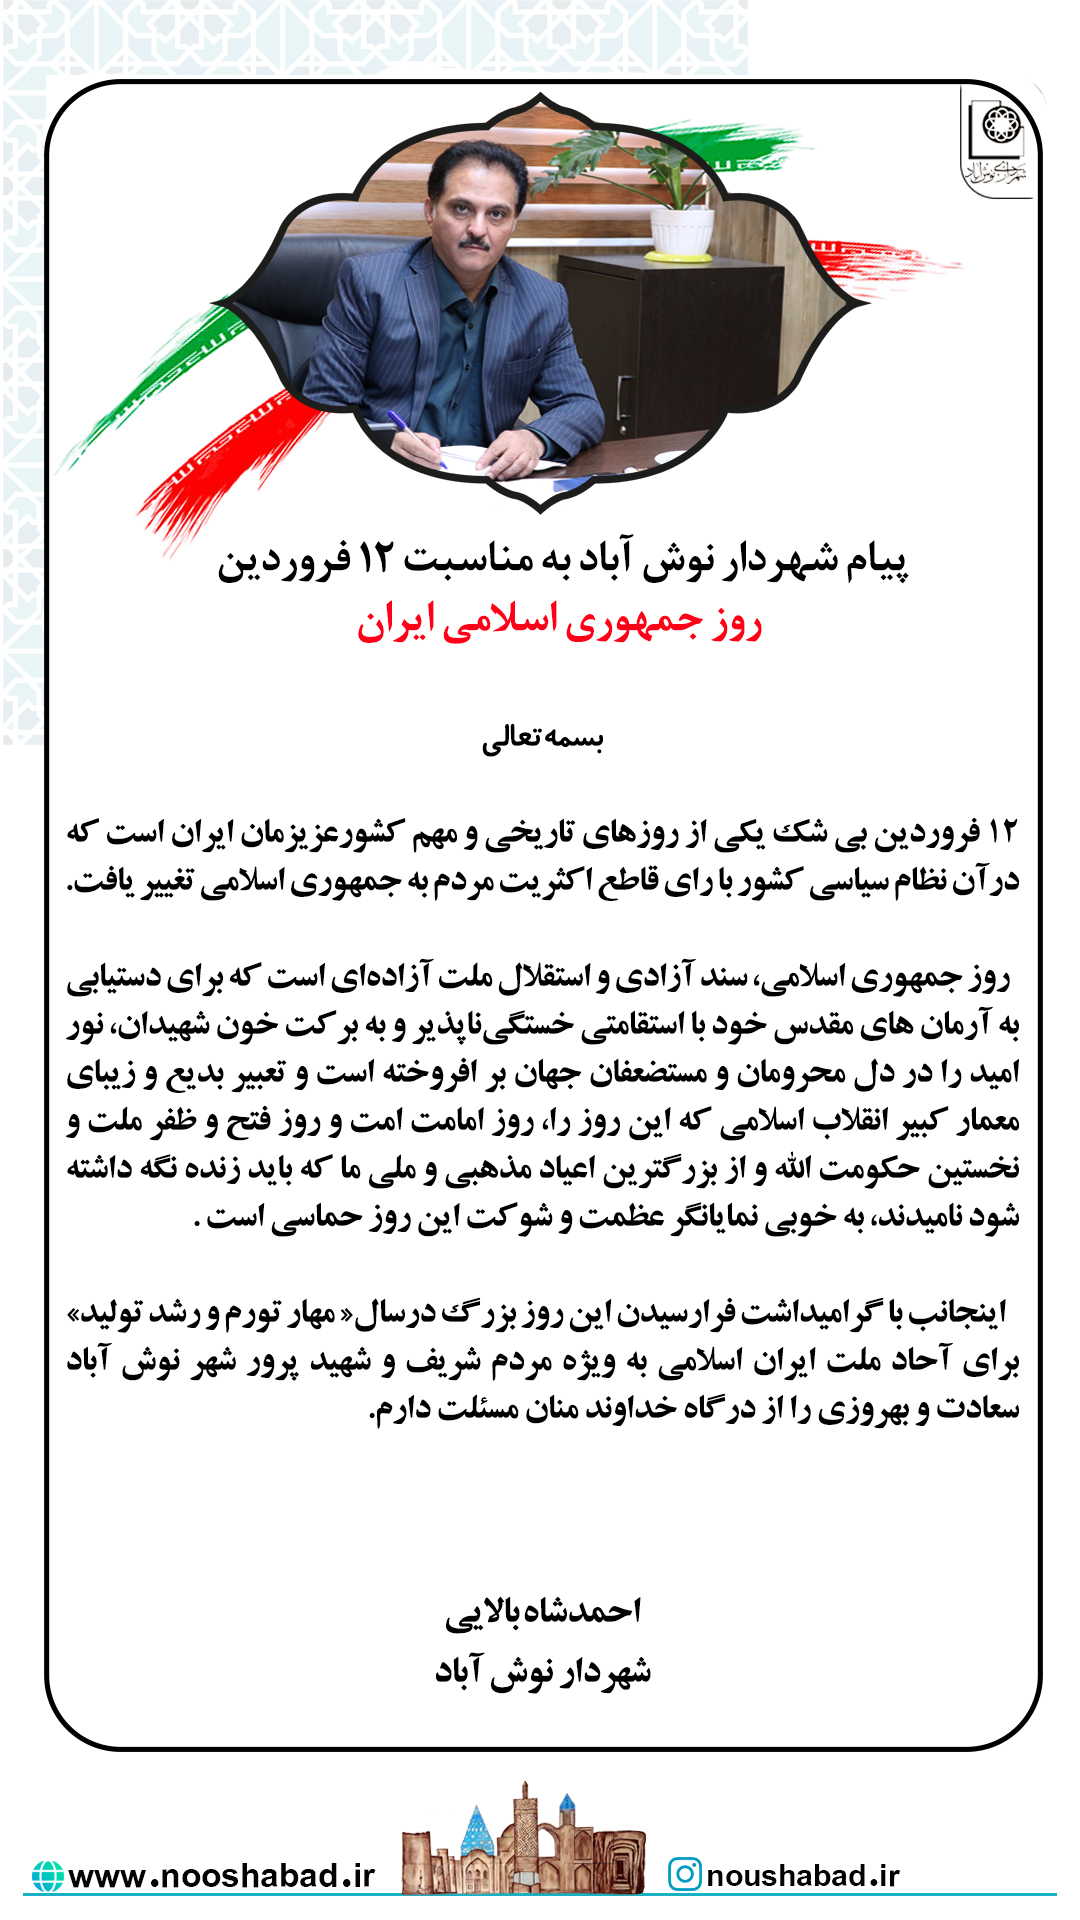 پیام شهردار نوش آباد به مناسبت روز جمهوری اسلامی ایران